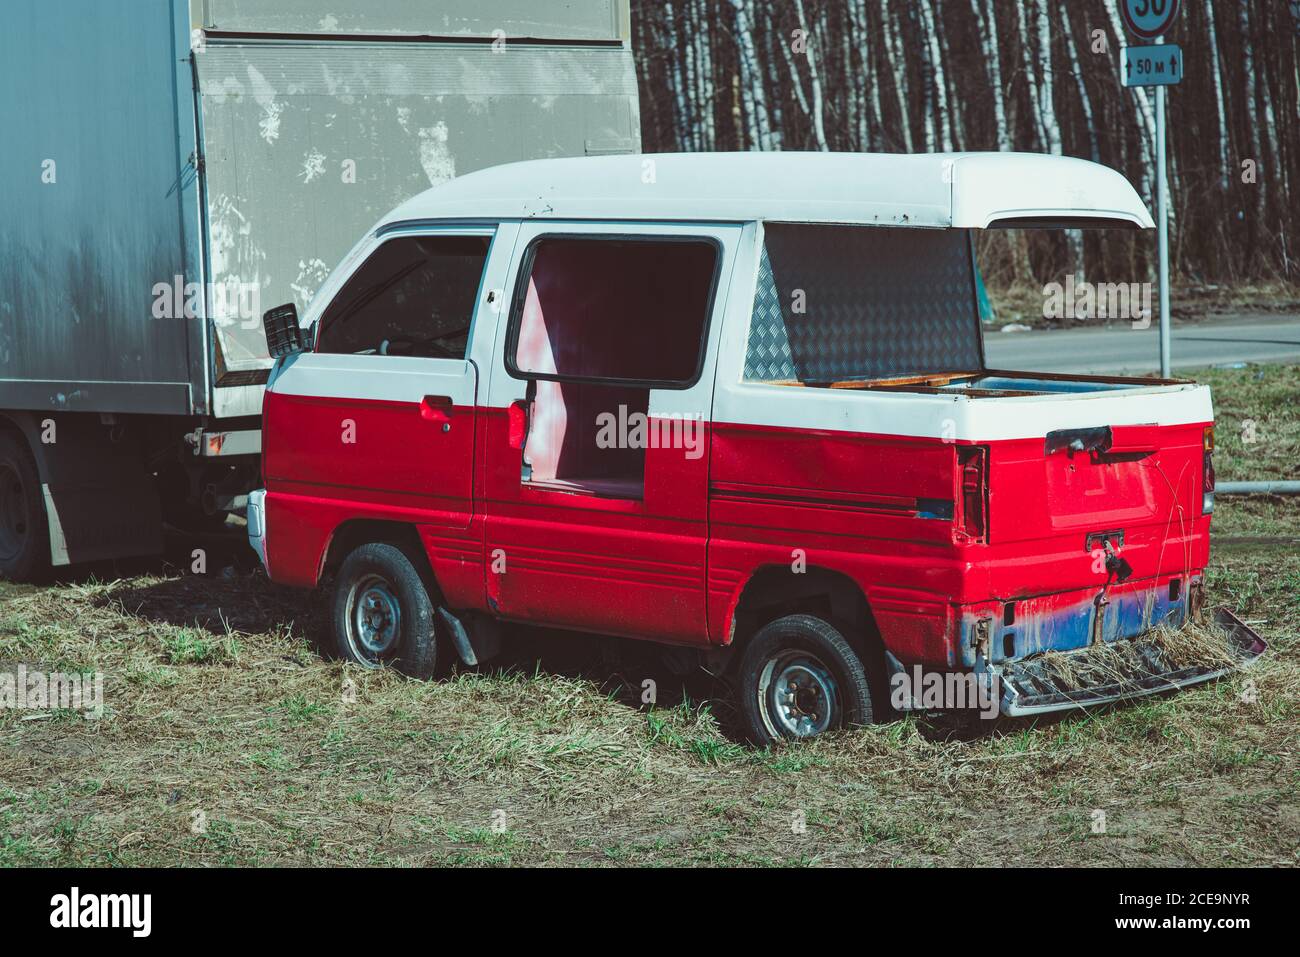 Vecchio arrugginito, abbandonato rosso e bianco relitto del bus in arido paesaggio forestale con le betulle Foto Stock